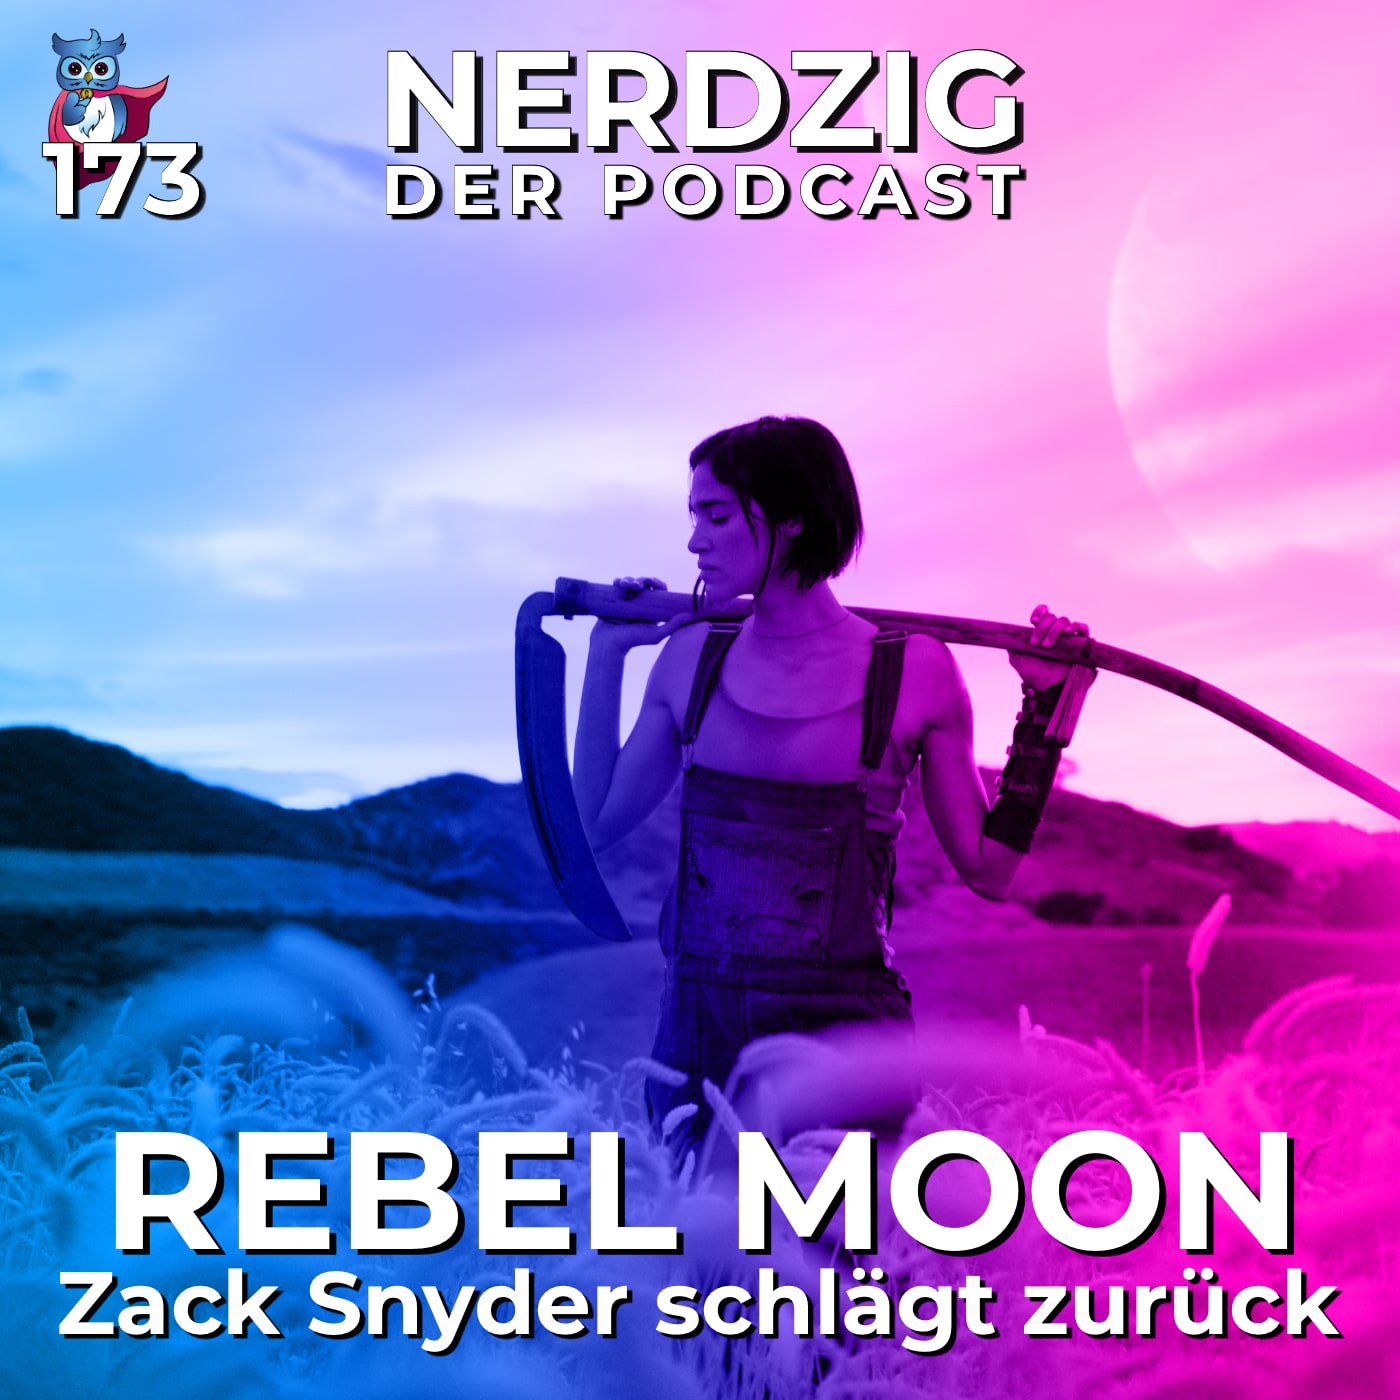 Nerdzig - Der Podcast #173 – Rebel Moon, Teil 1 - Zack Snyder schlägt zurück!